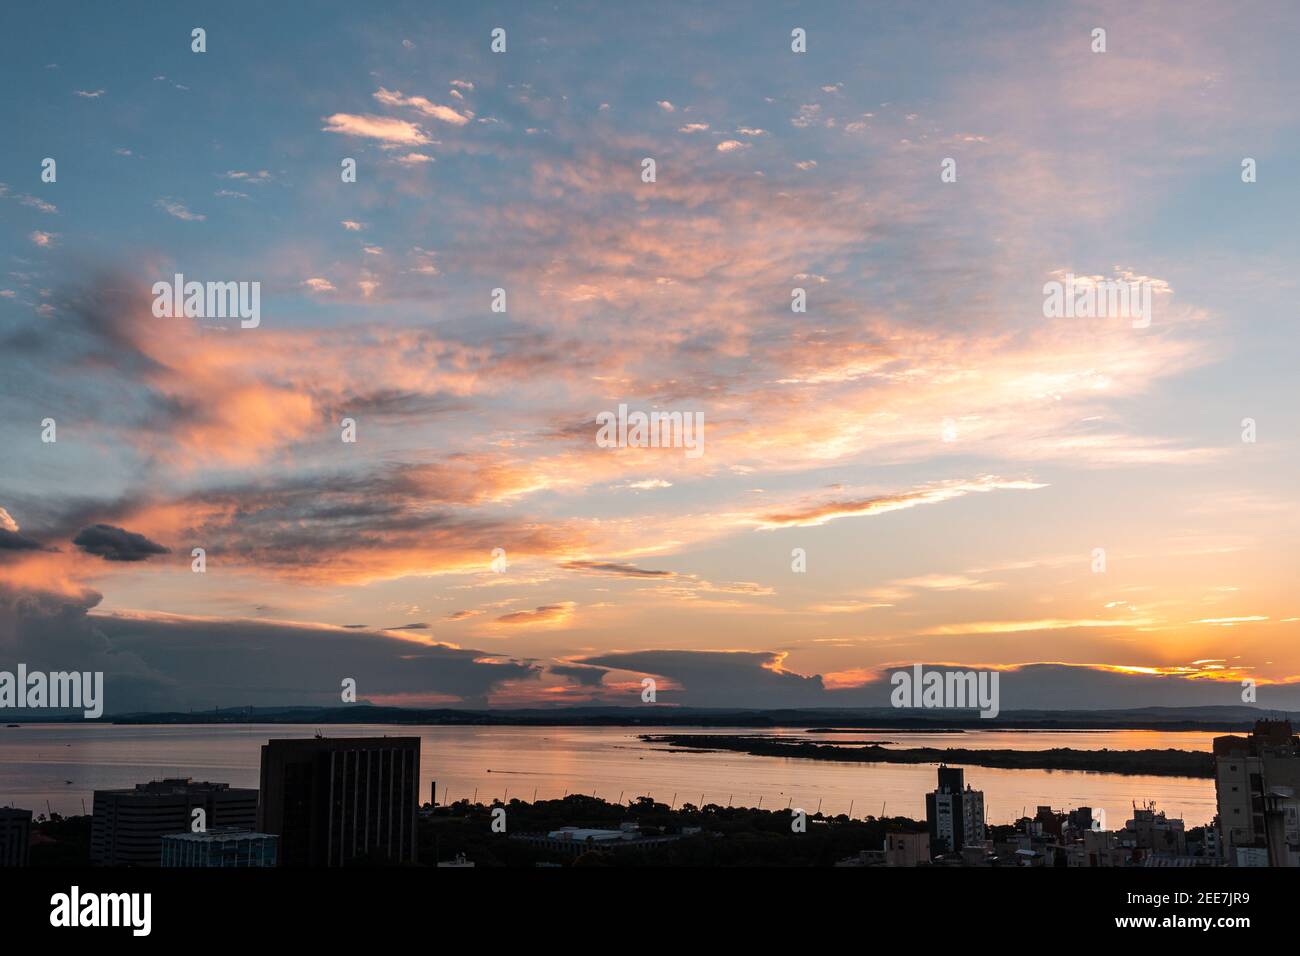 Sunset over Guaiba lake in Porto Alegre, Brazil Stock Photo